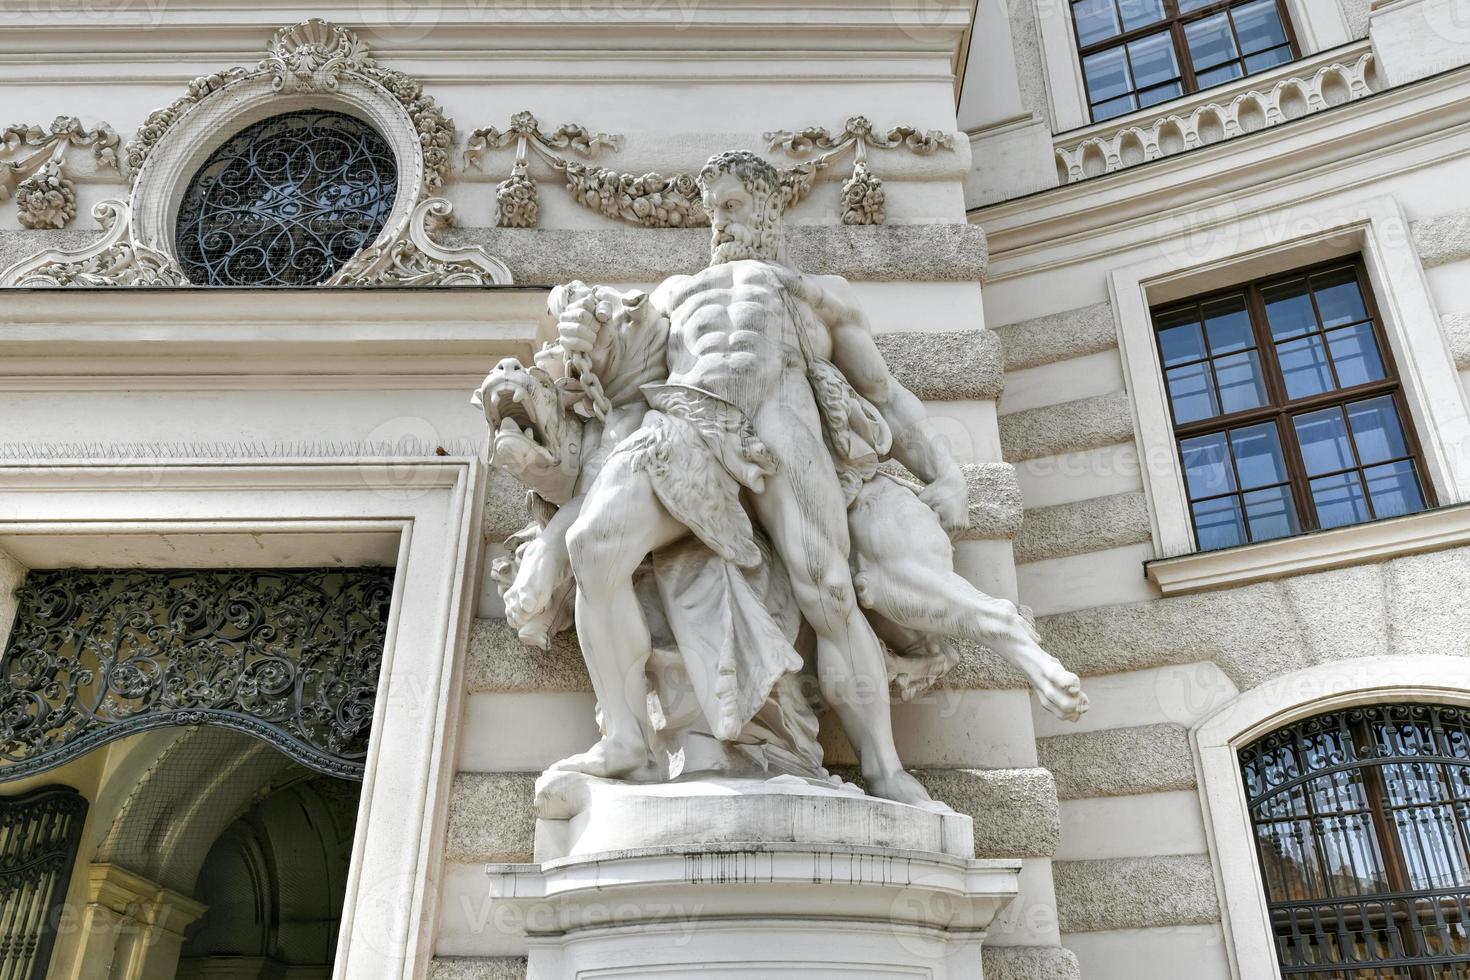 Heracles y cerbero por anton Pablo wagner 1834-1895 a hofburg mijailovski ala en michaelerplatz cuadrado S t. de miguel cuadrado en Viena, Austria. foto